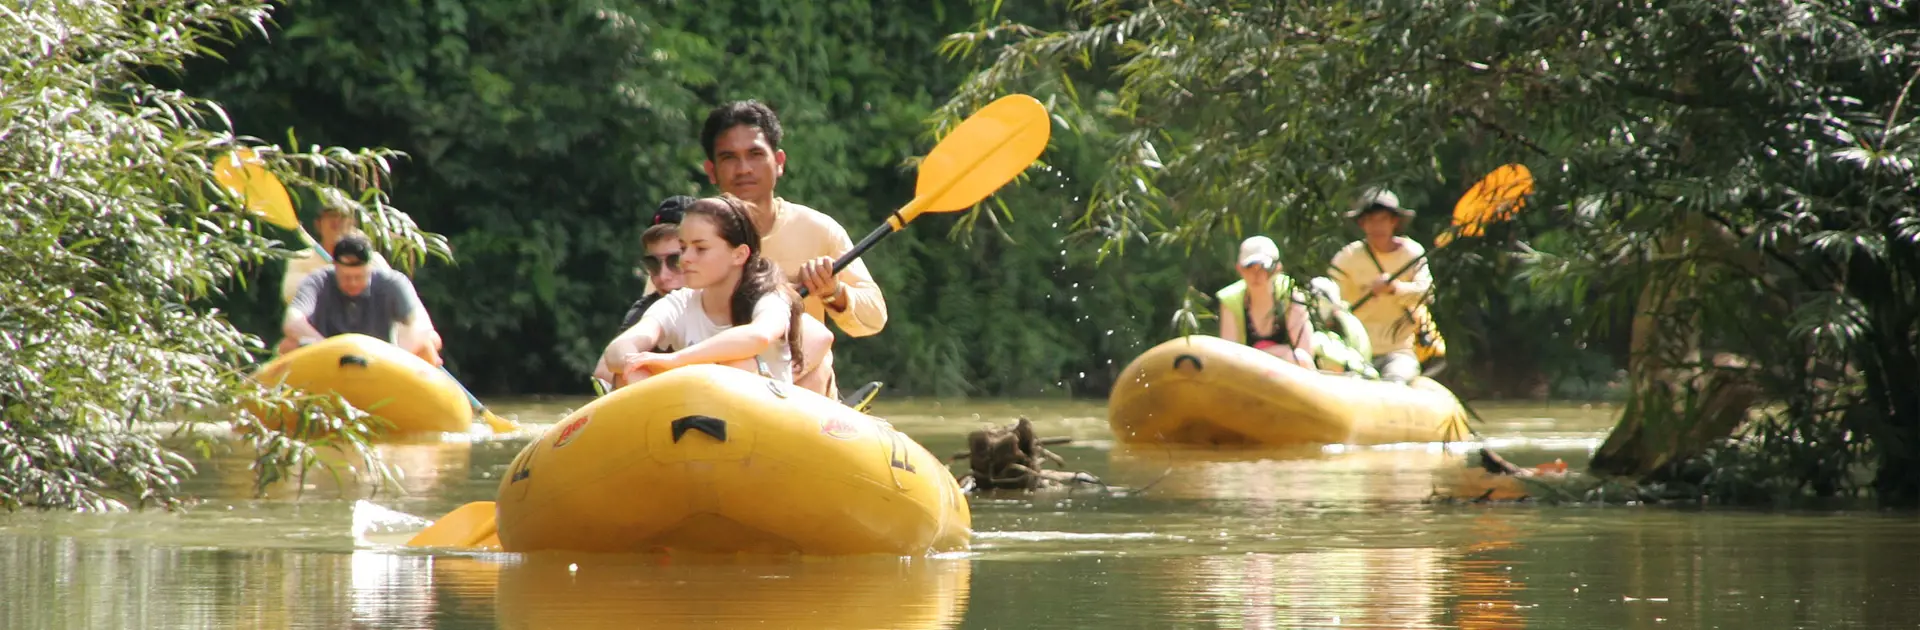 KANOTUR - I kommer på sejltur på floden, der bugter sig gennem Khao Sok Nationalpark